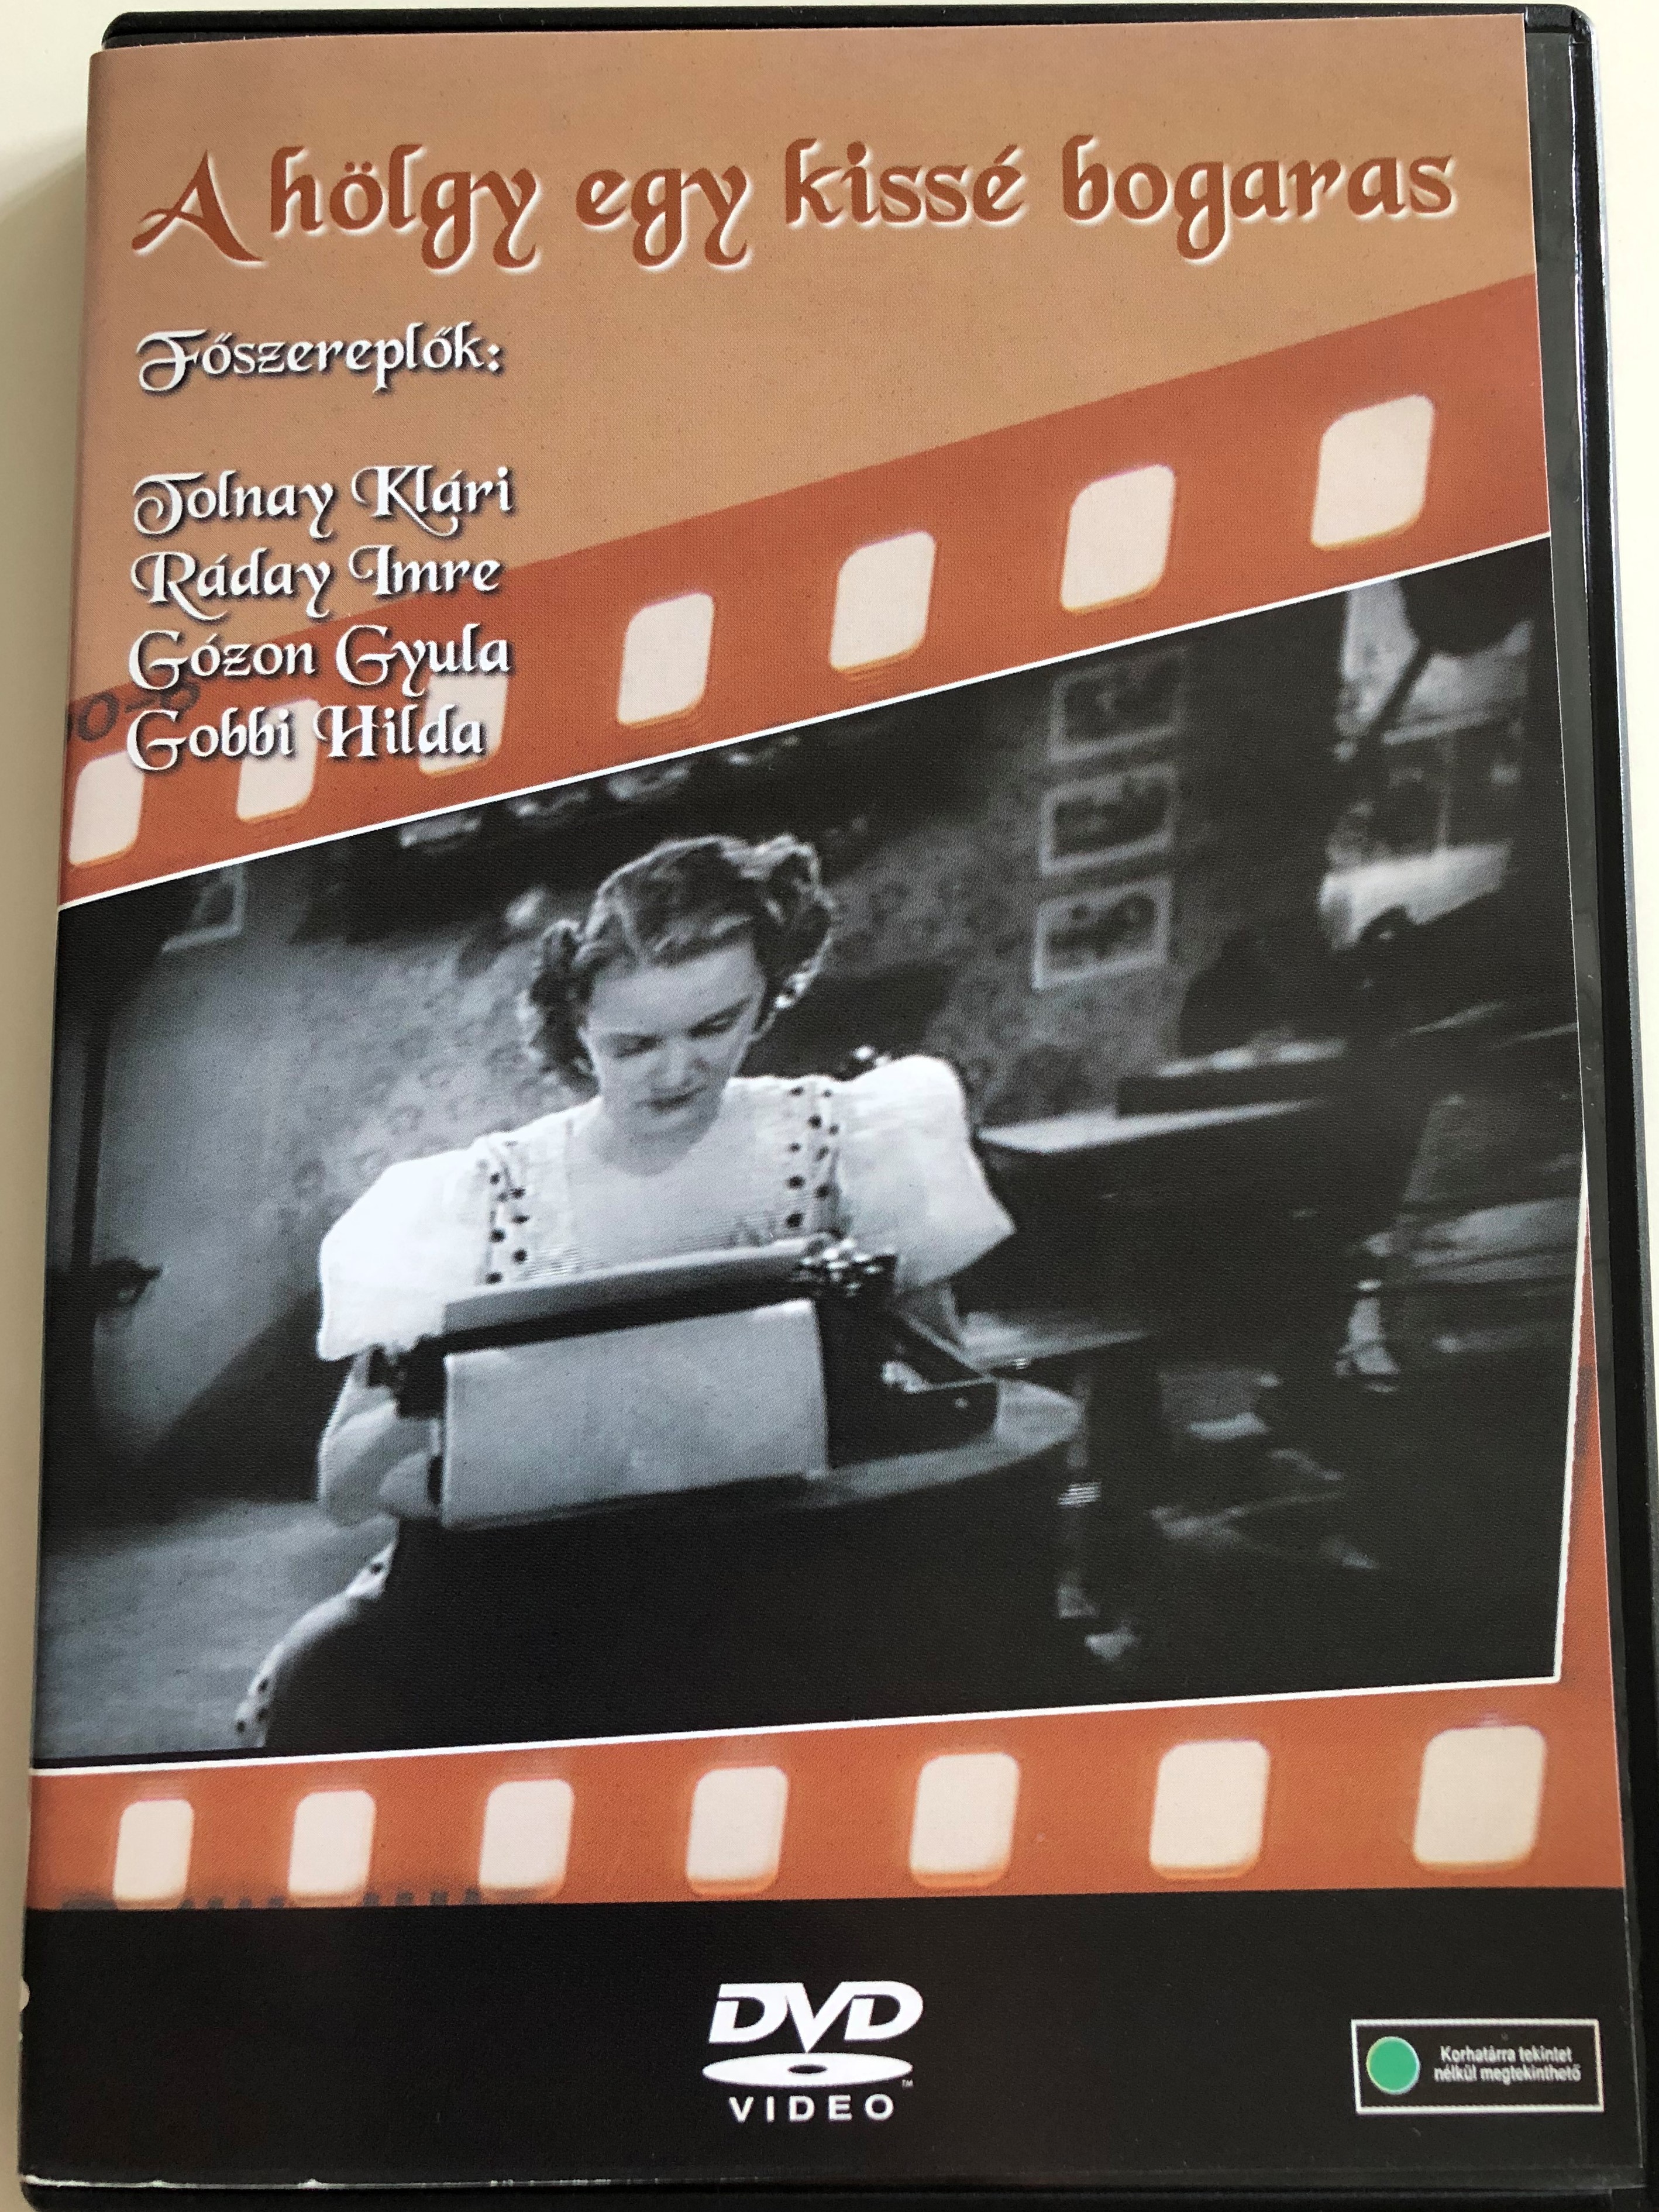 a-h-lgy-egy-kiss-bogaras-dvd-1938-directed-by-r-thonyi-kos-starring-tolnay-kl-ri-r-day-imre-m-ly-ger-b-w-hungarian-classic-film-1-.jpg